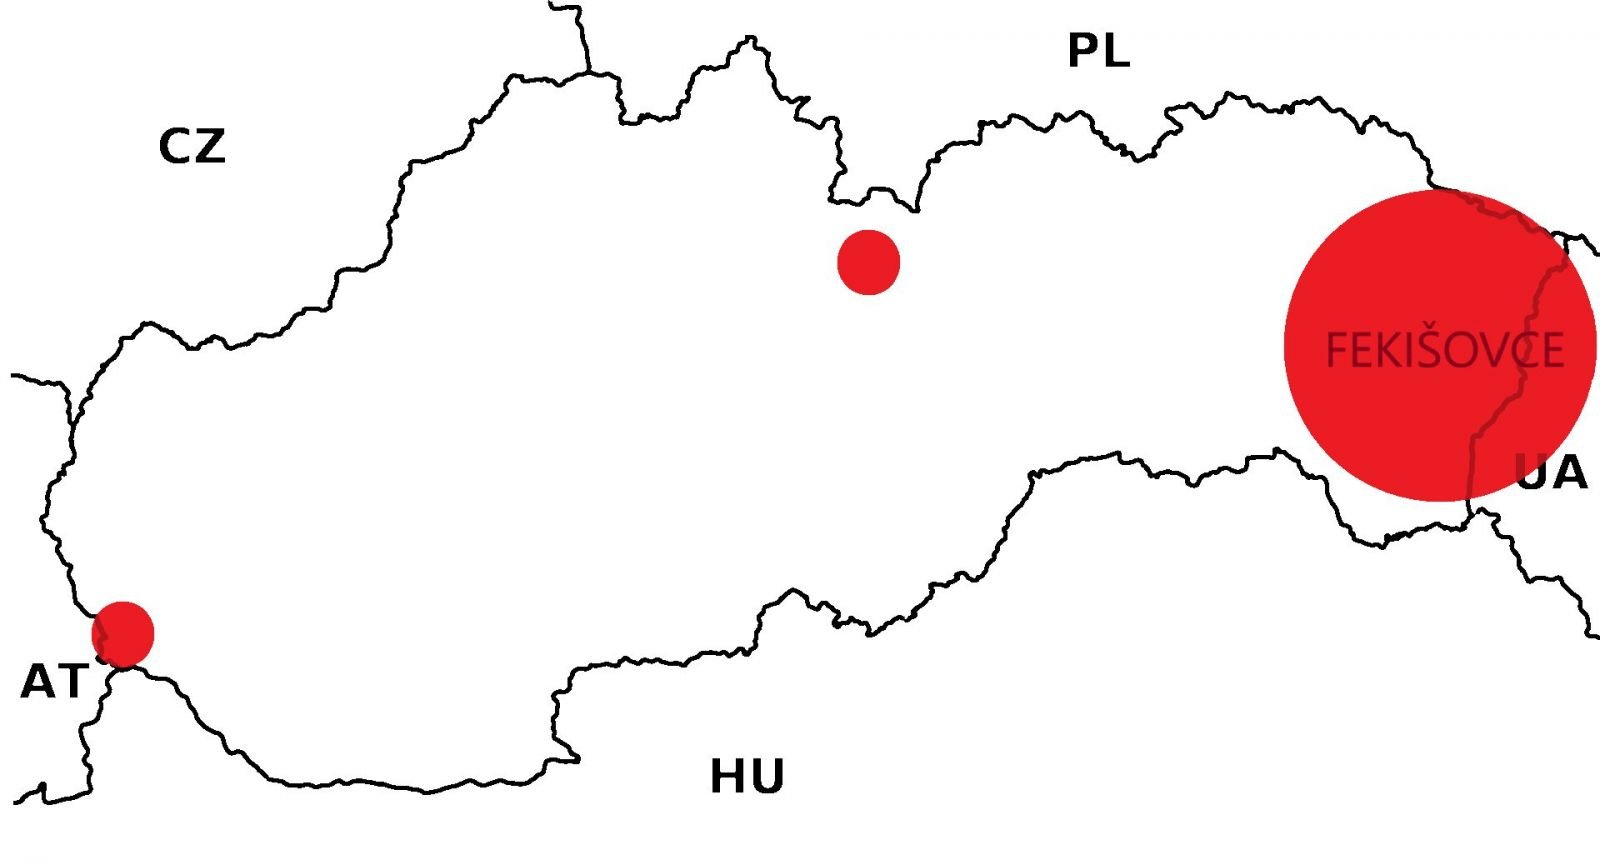 Mapy Slovenska